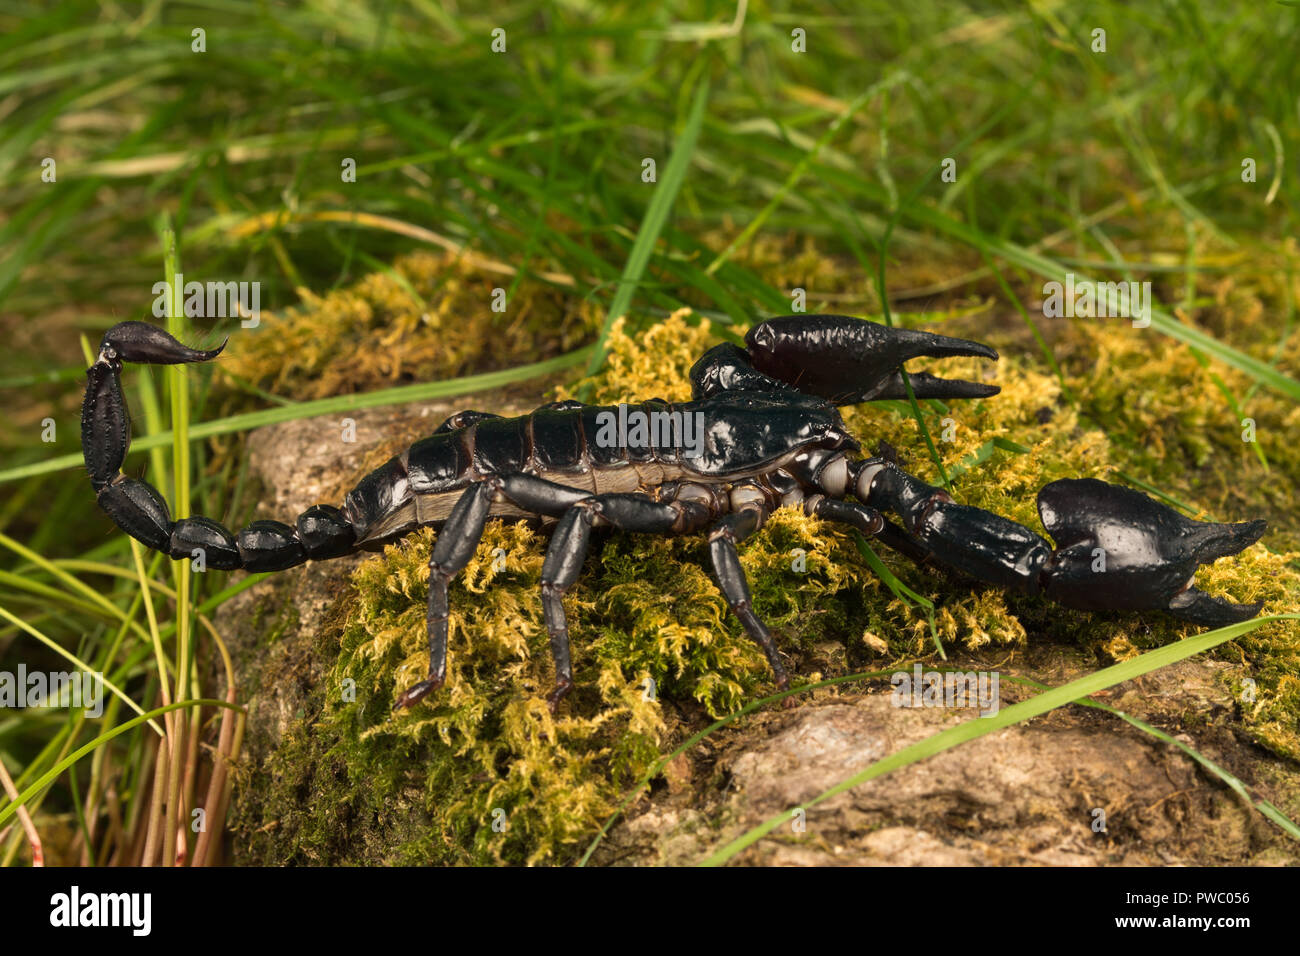 Scorpion Pandinus imperator (empereur), une espèce de scorpion originaire de forêts humides et les savanes de l'Afrique de l'Ouest Banque D'Images